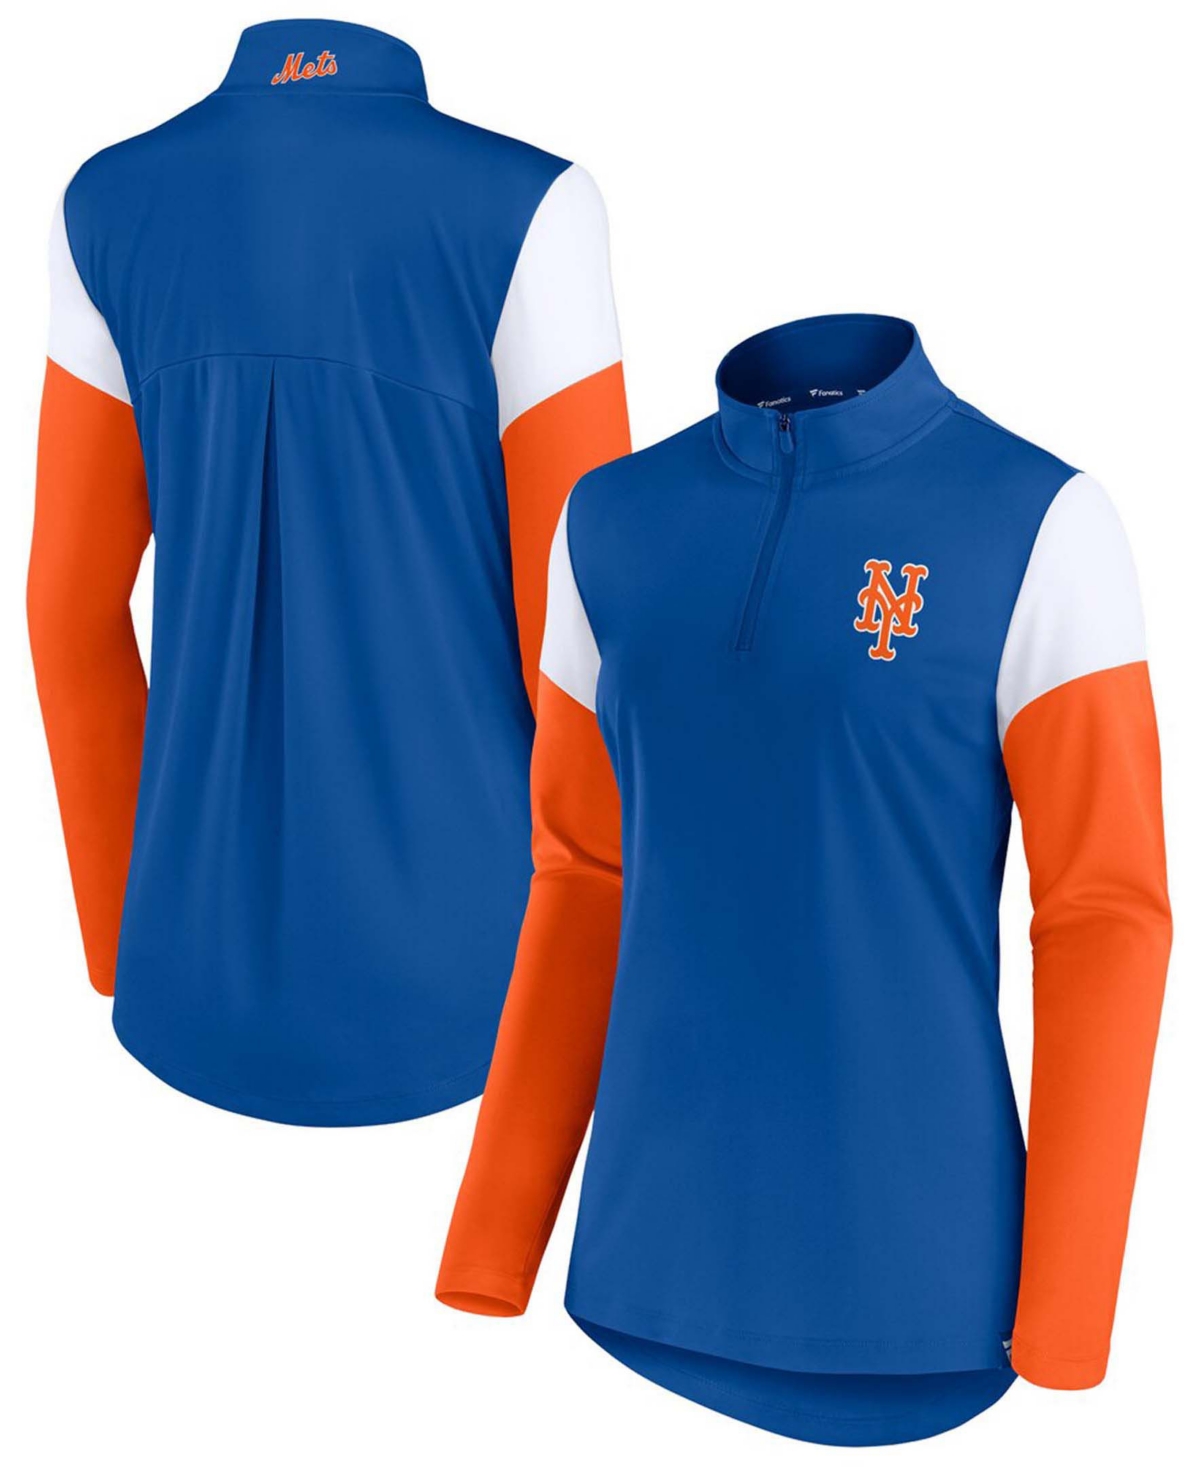 Women's Royal, Orange New York Mets Authentic Fleece Quarter-Zip Jacket - Royal